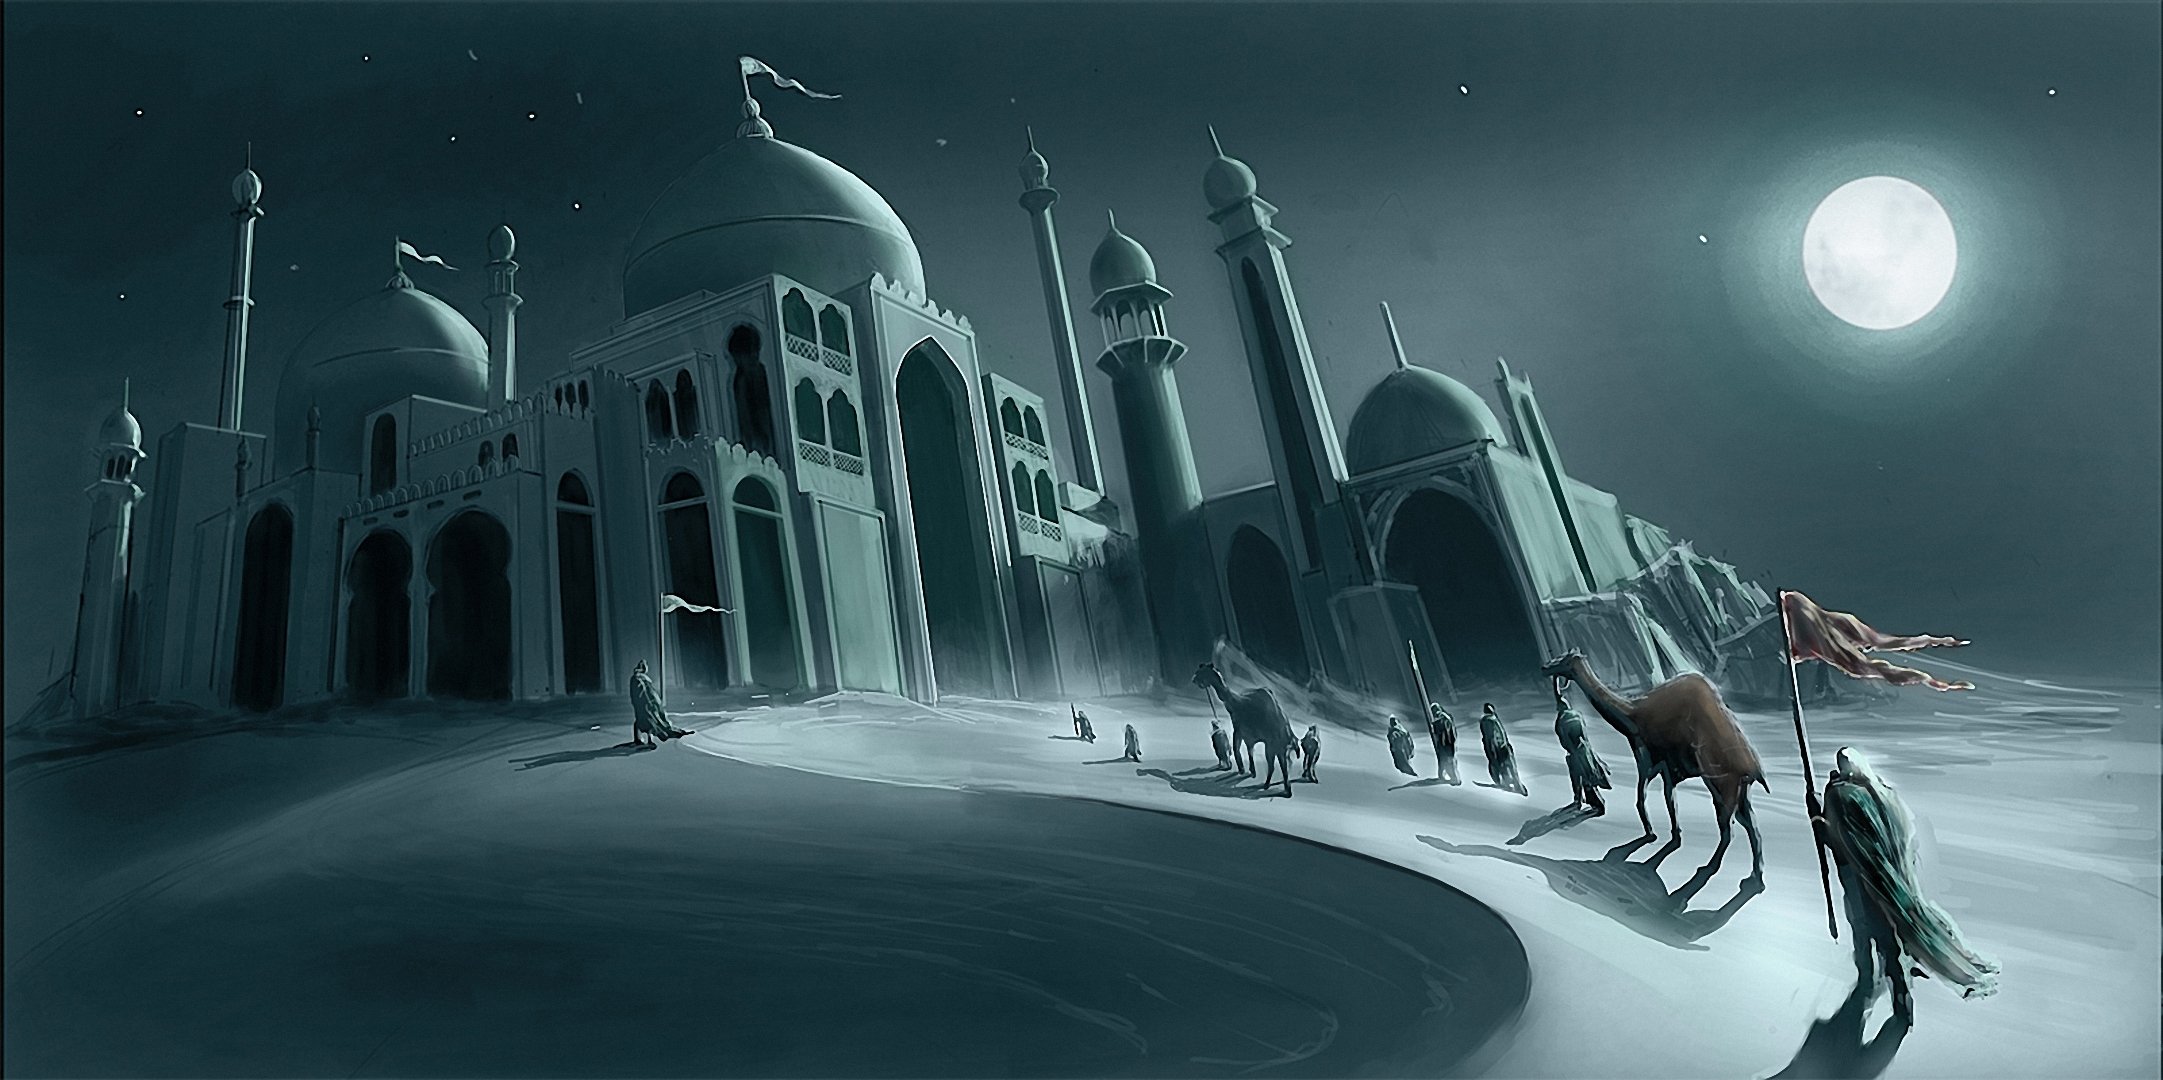 Город полумесяца дом пламени и тени. Медина мечеть минарет. Город в пустыне. Город в пустыне фэнтези. Города в пустыне картины.